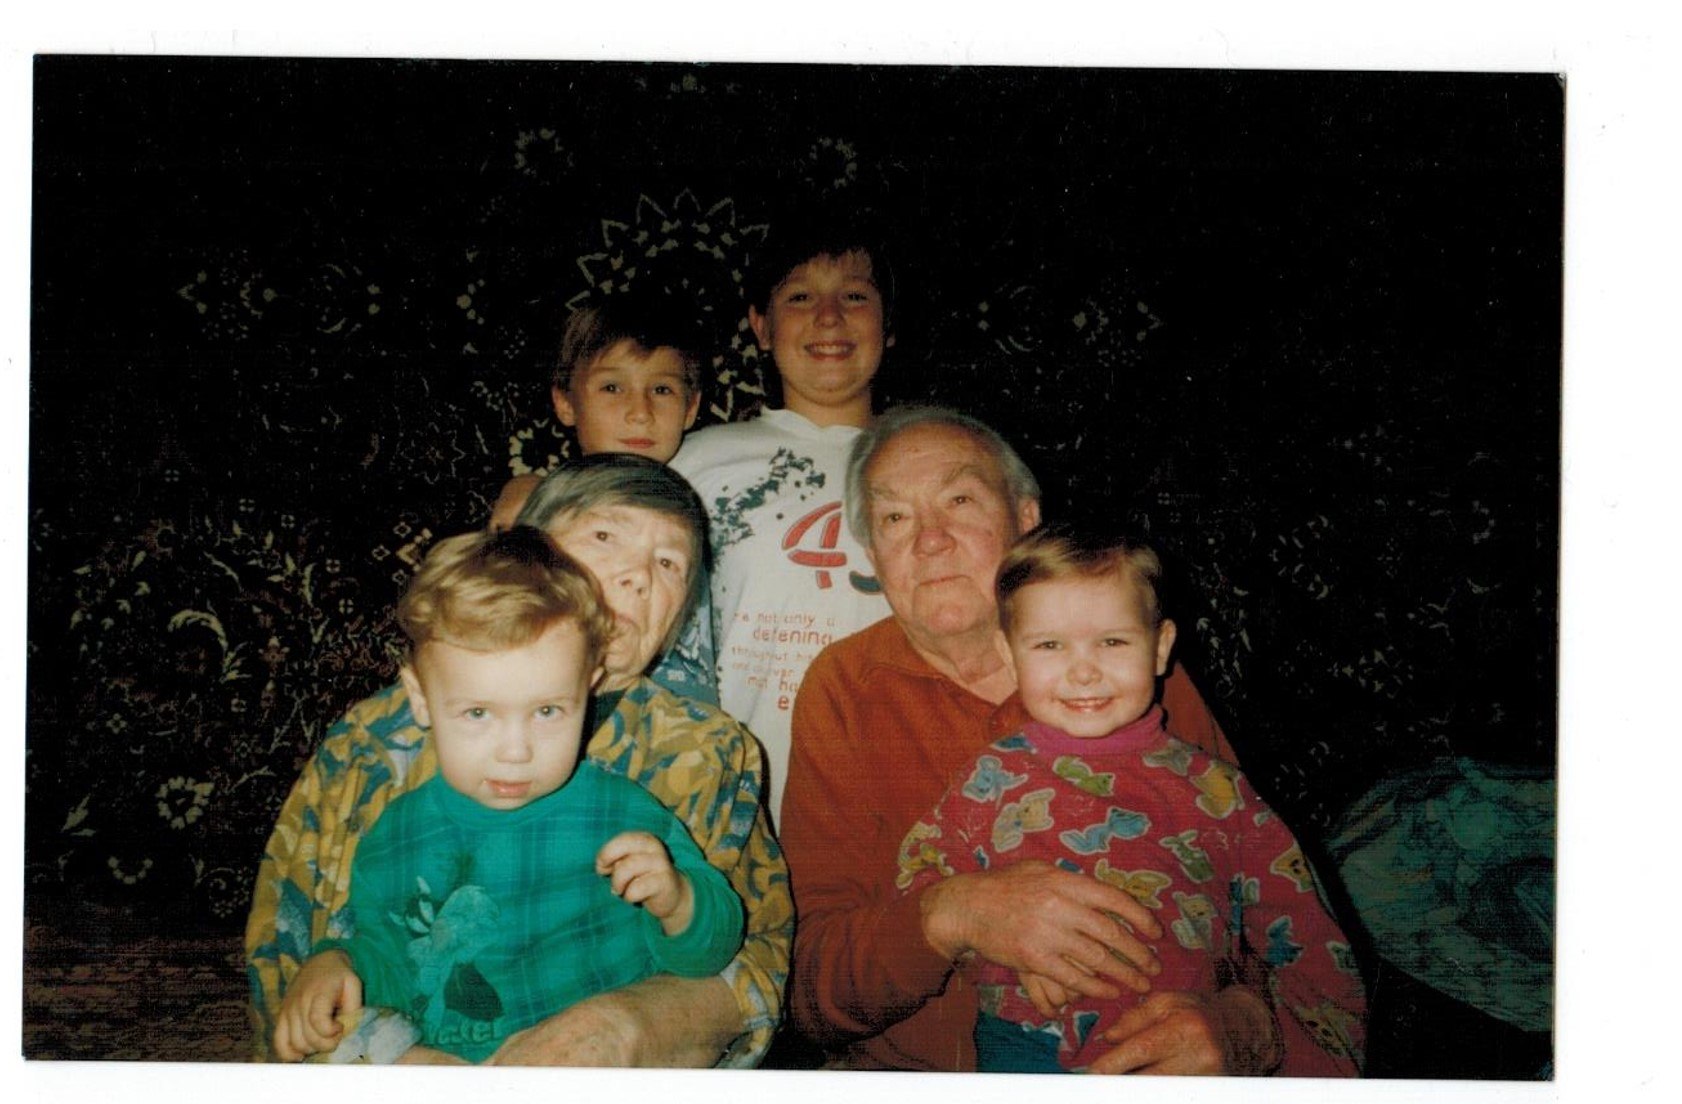 Денис с двоюродными братьями, прабабушкой Машей и с прадедушкой Руфой. Фото предоставлено автором воспоминаний.